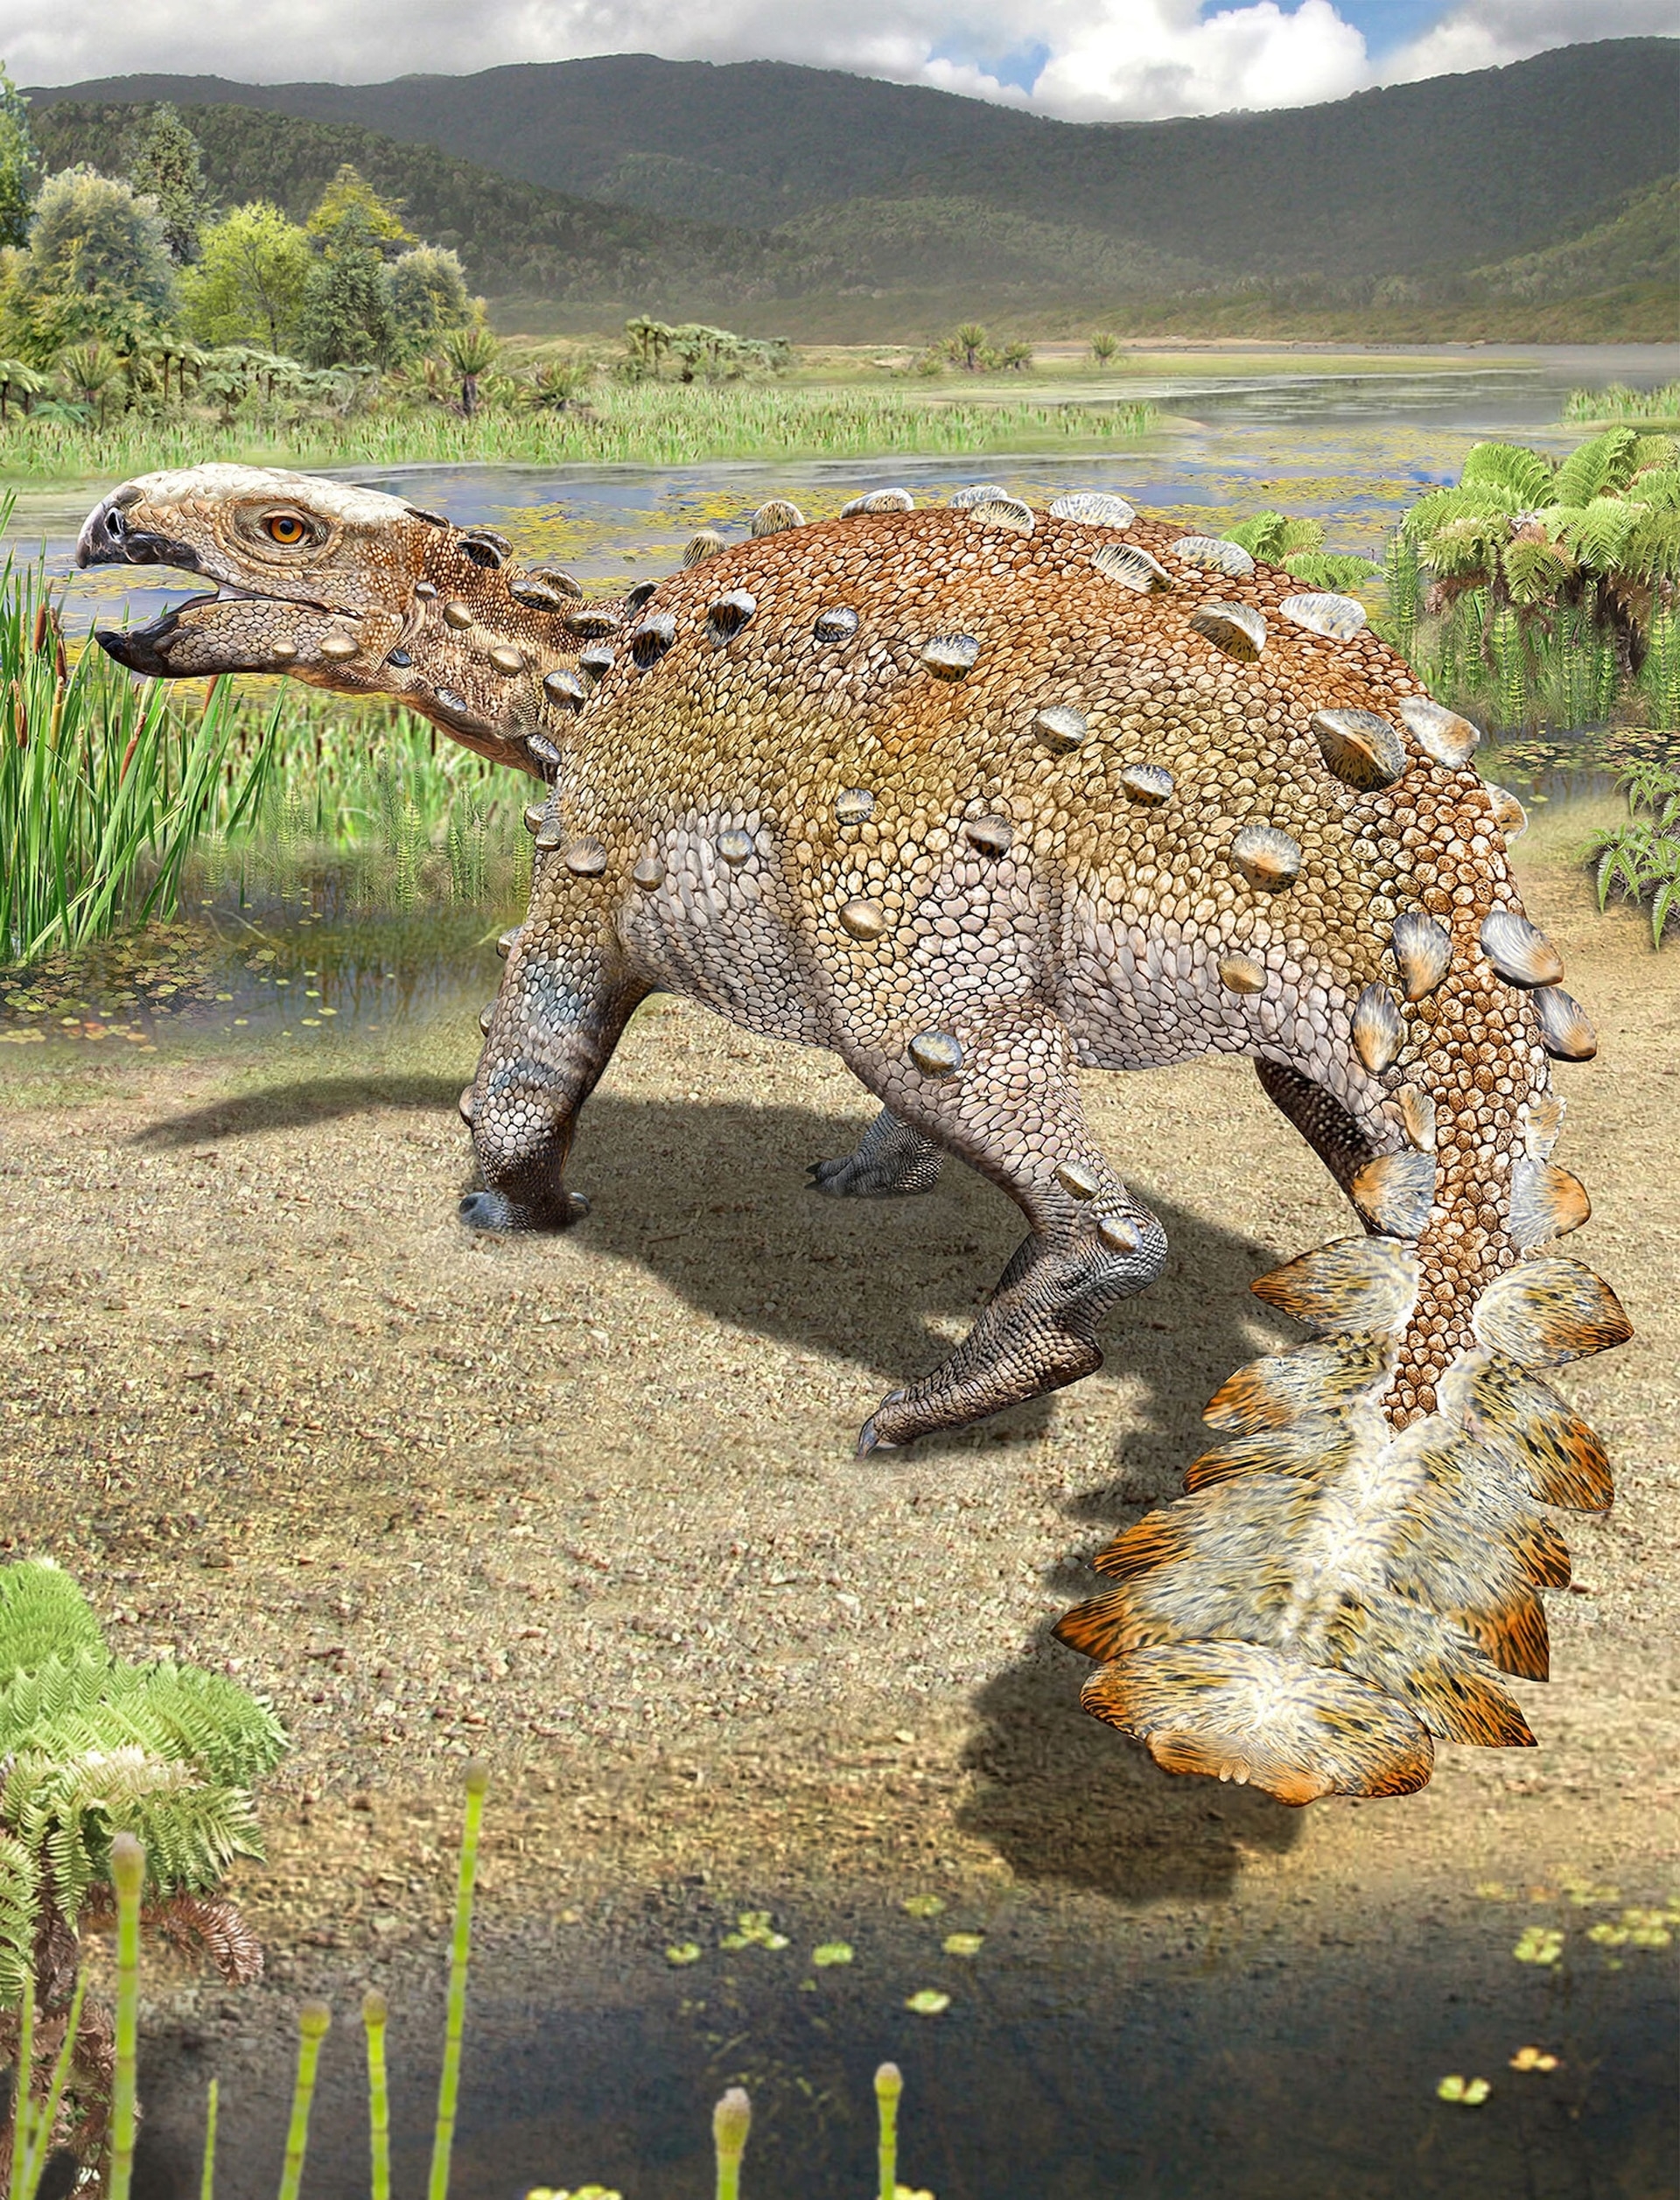 大約7300萬年前，這種有著「砍刀狀尾巴」的新種恐龍曾在現今智利南邊一處綠意盎然的河口三角洲生息。插圖為藝術家對該物種的描繪。ILLUSTRATION BY MAURICIO ÁLVAREZ 